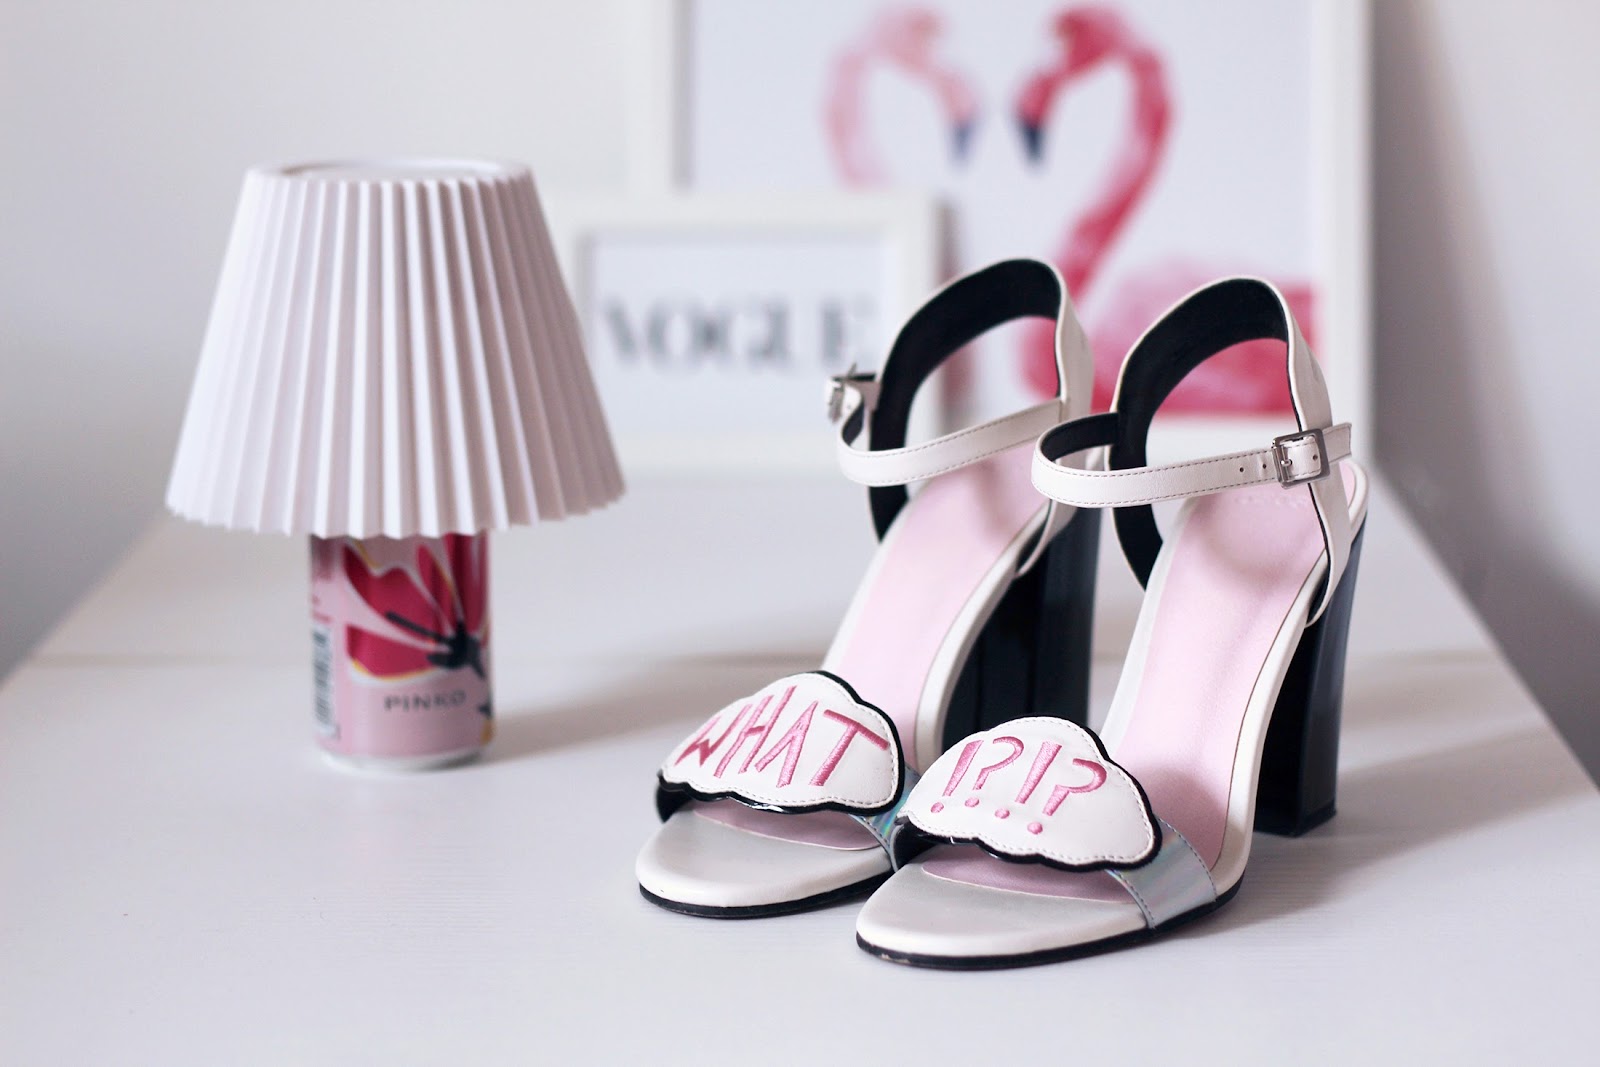 fashion shoes heels sandals asos flamingo interior design home pink sophia webster vogue glamour shoeting